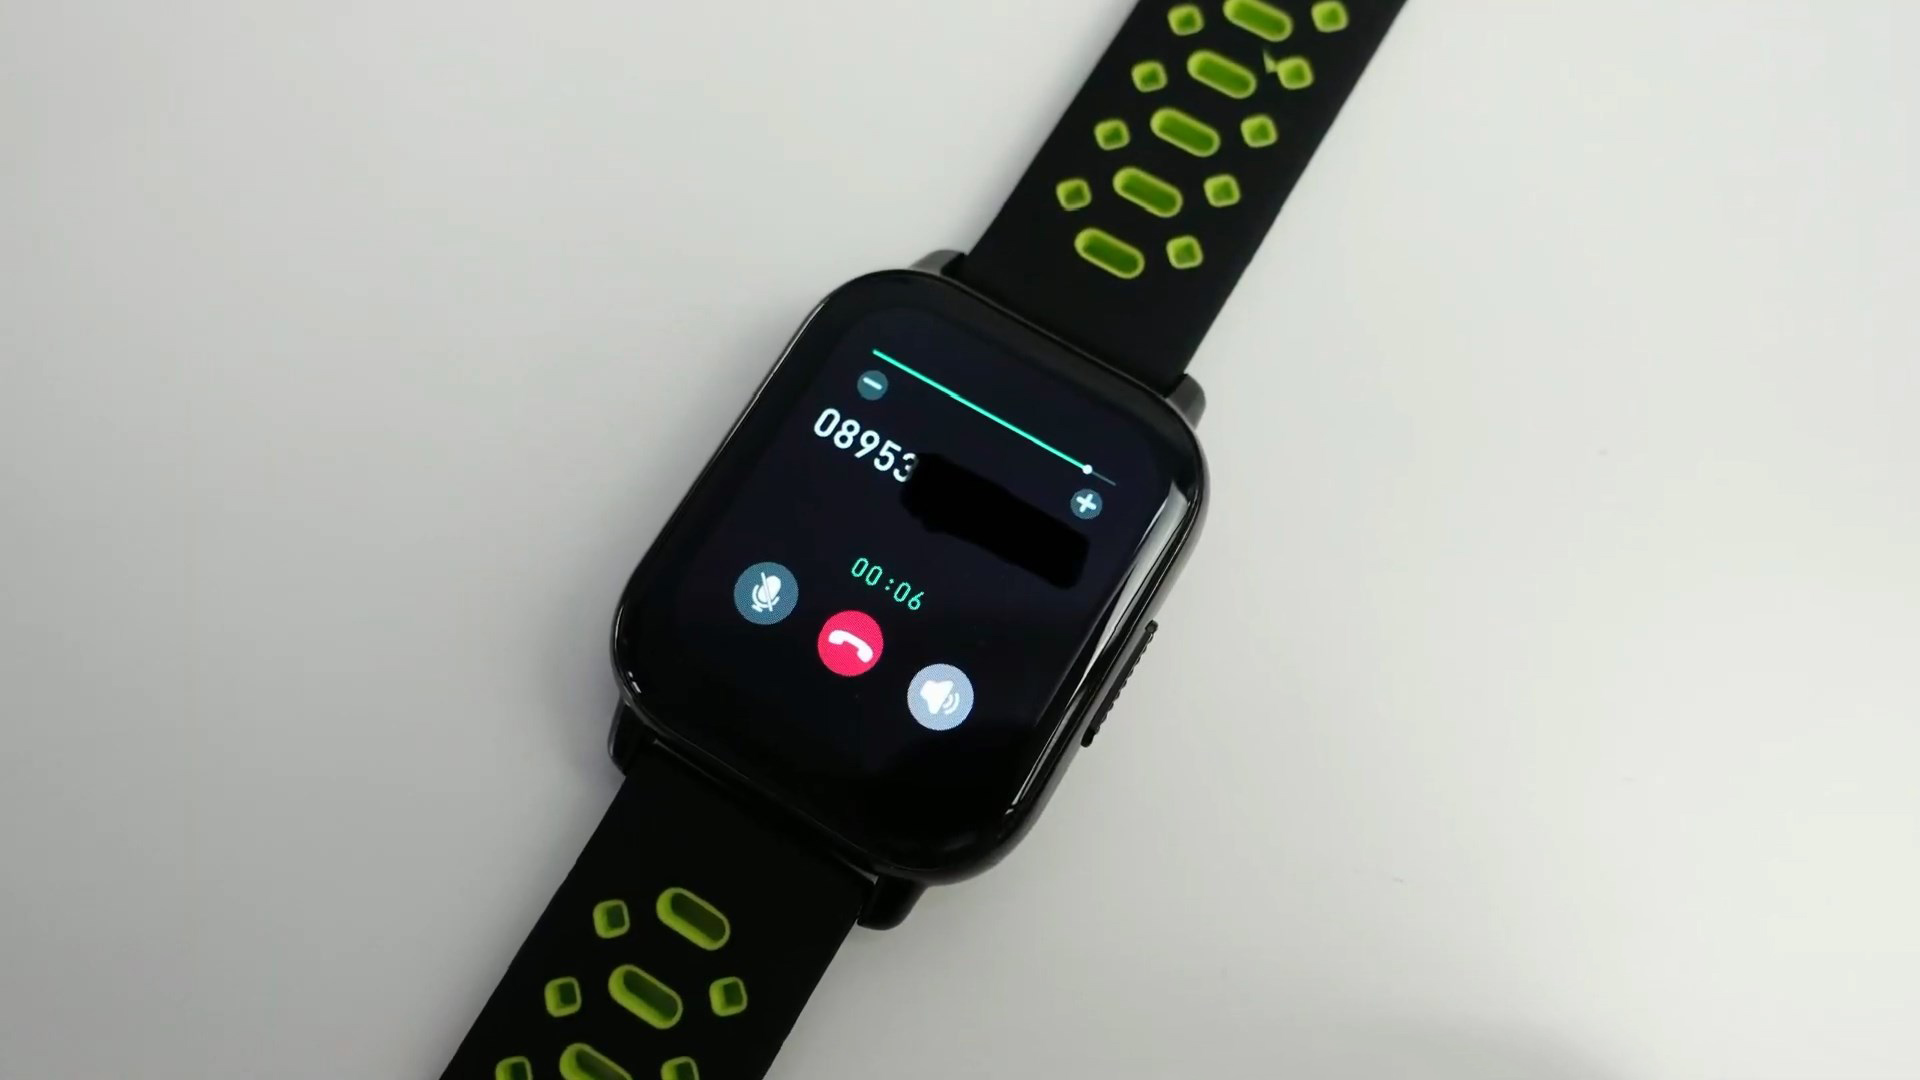 Zeblaze Btalk Smartwatch Review